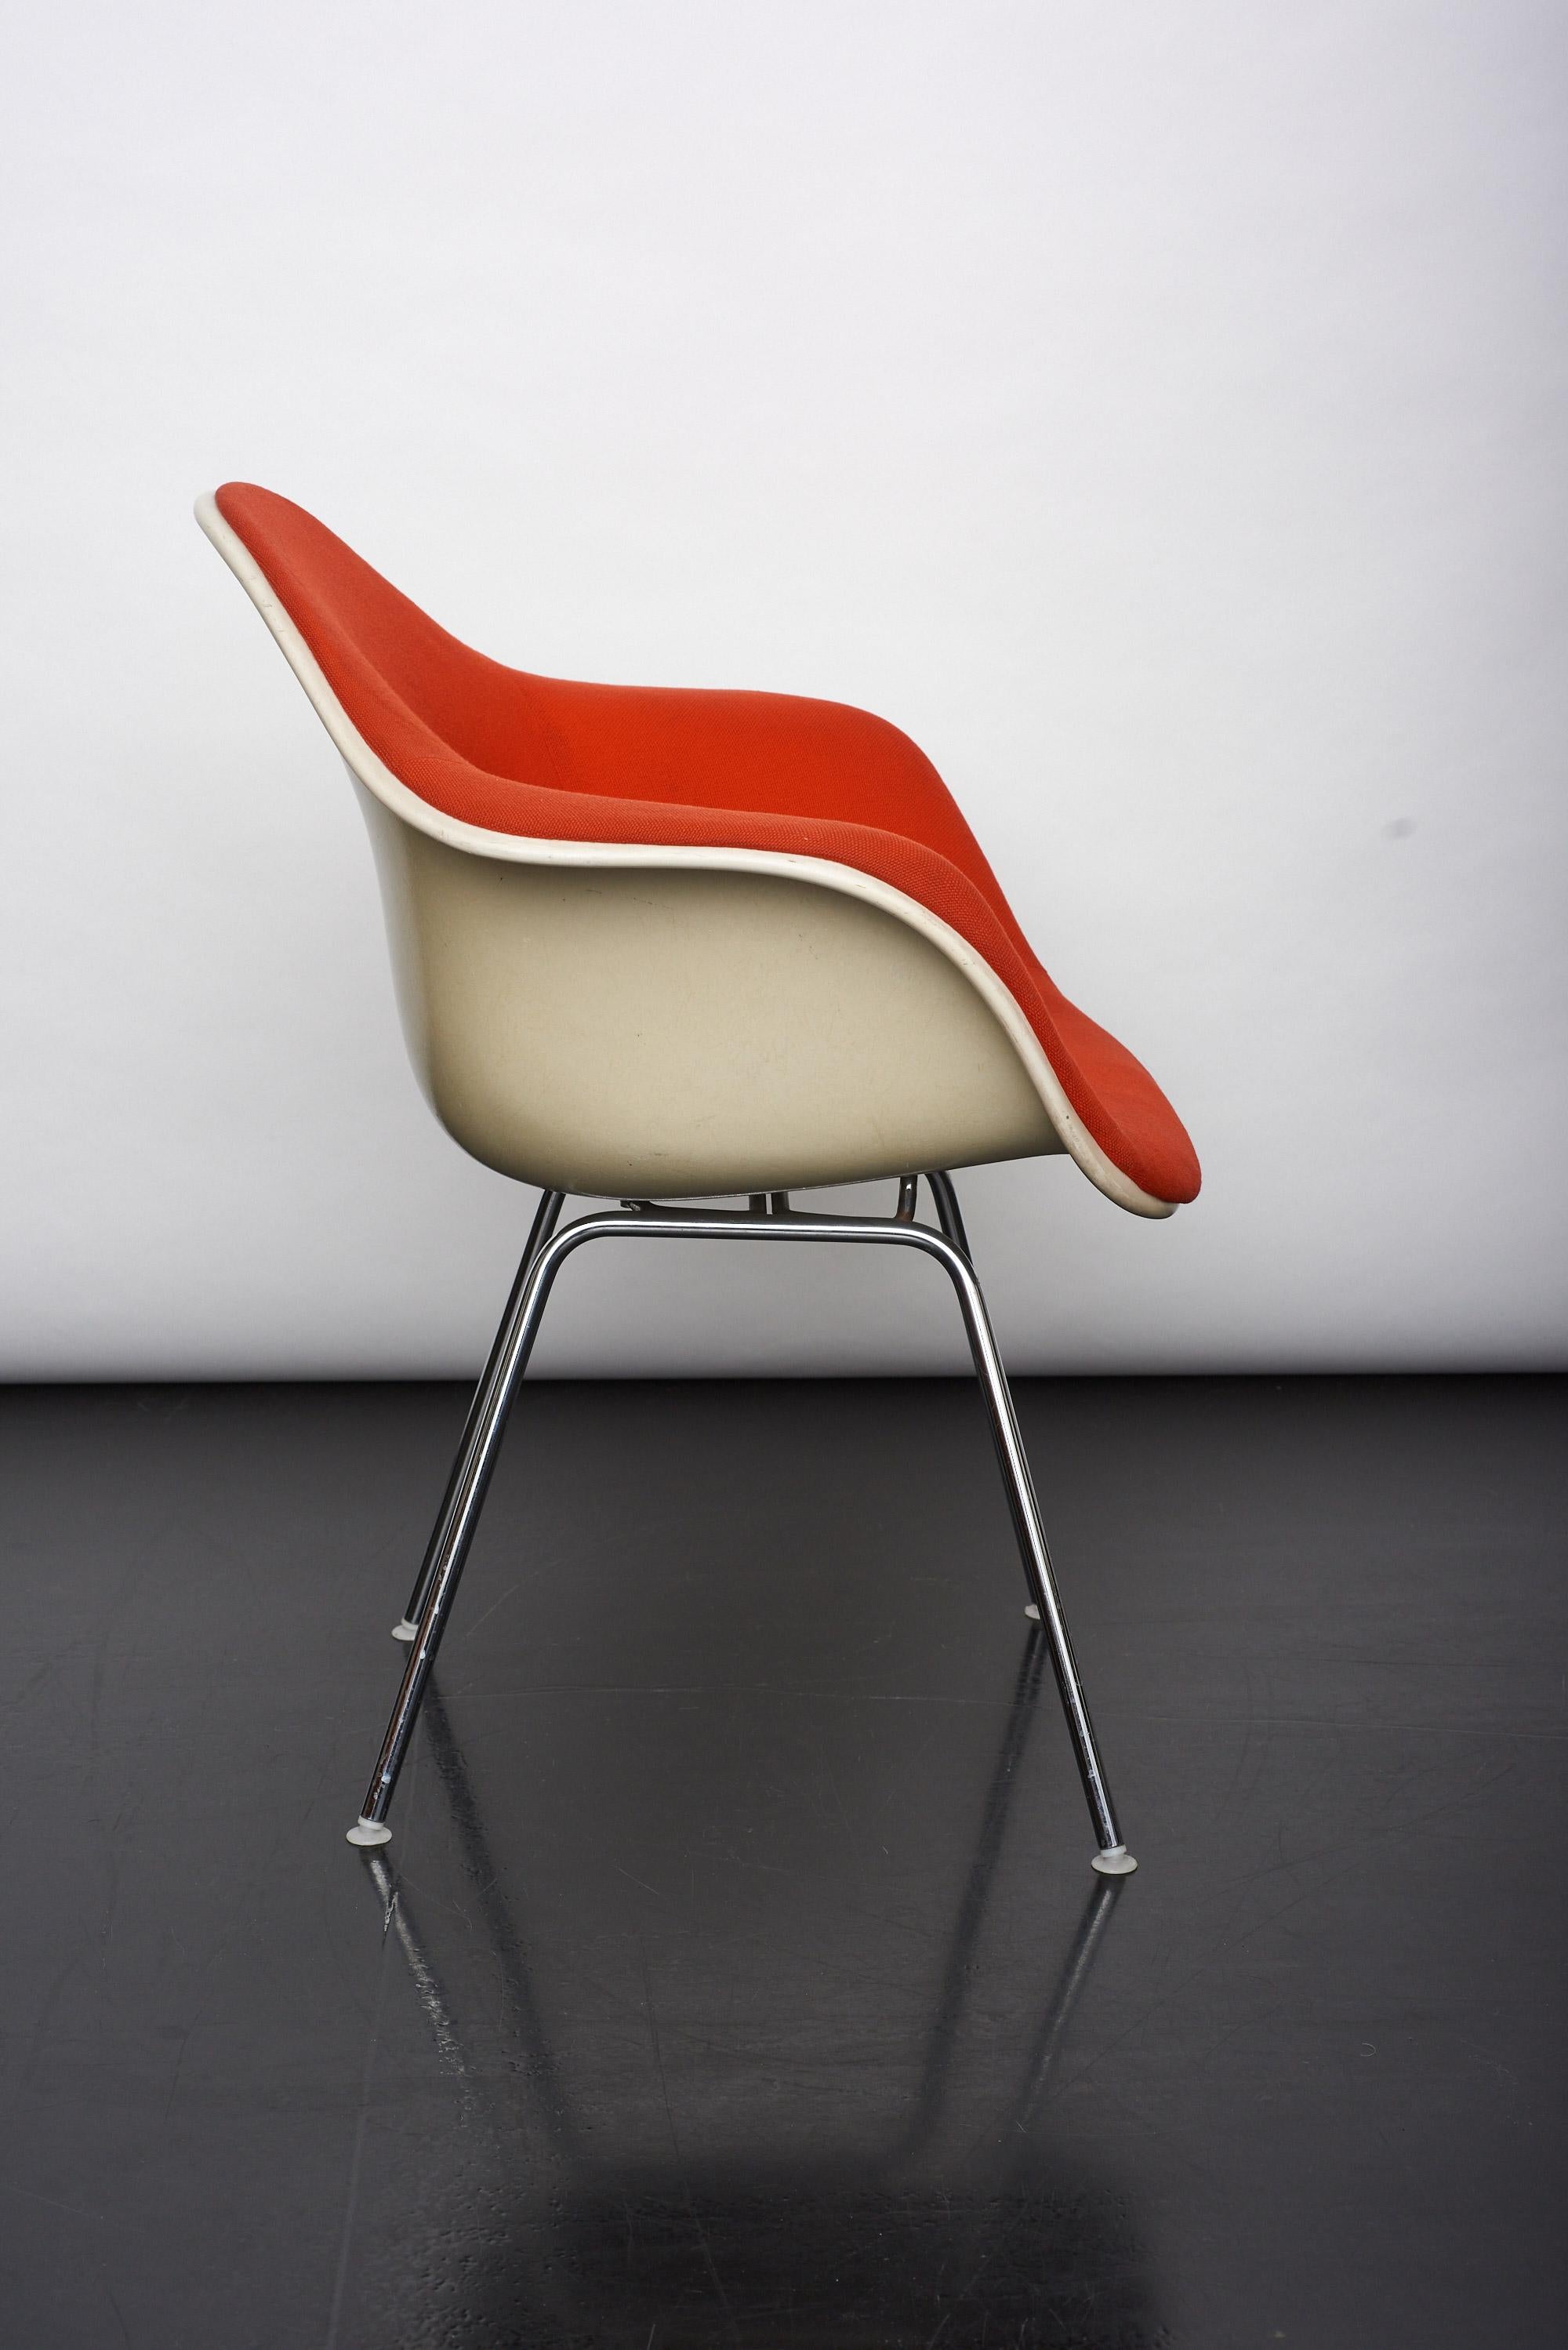 Der DAX-Stuhl verbindet die Schale der „Eames-Sessel“ mit einem klassischen vierbeinigen Sockel und ist somit eine Realisierung des von Charles und Ray Eames in den 1950er Jahren entworfenen Stuhlkonzepts. Dank seines relativ einfachen Aussehens ist